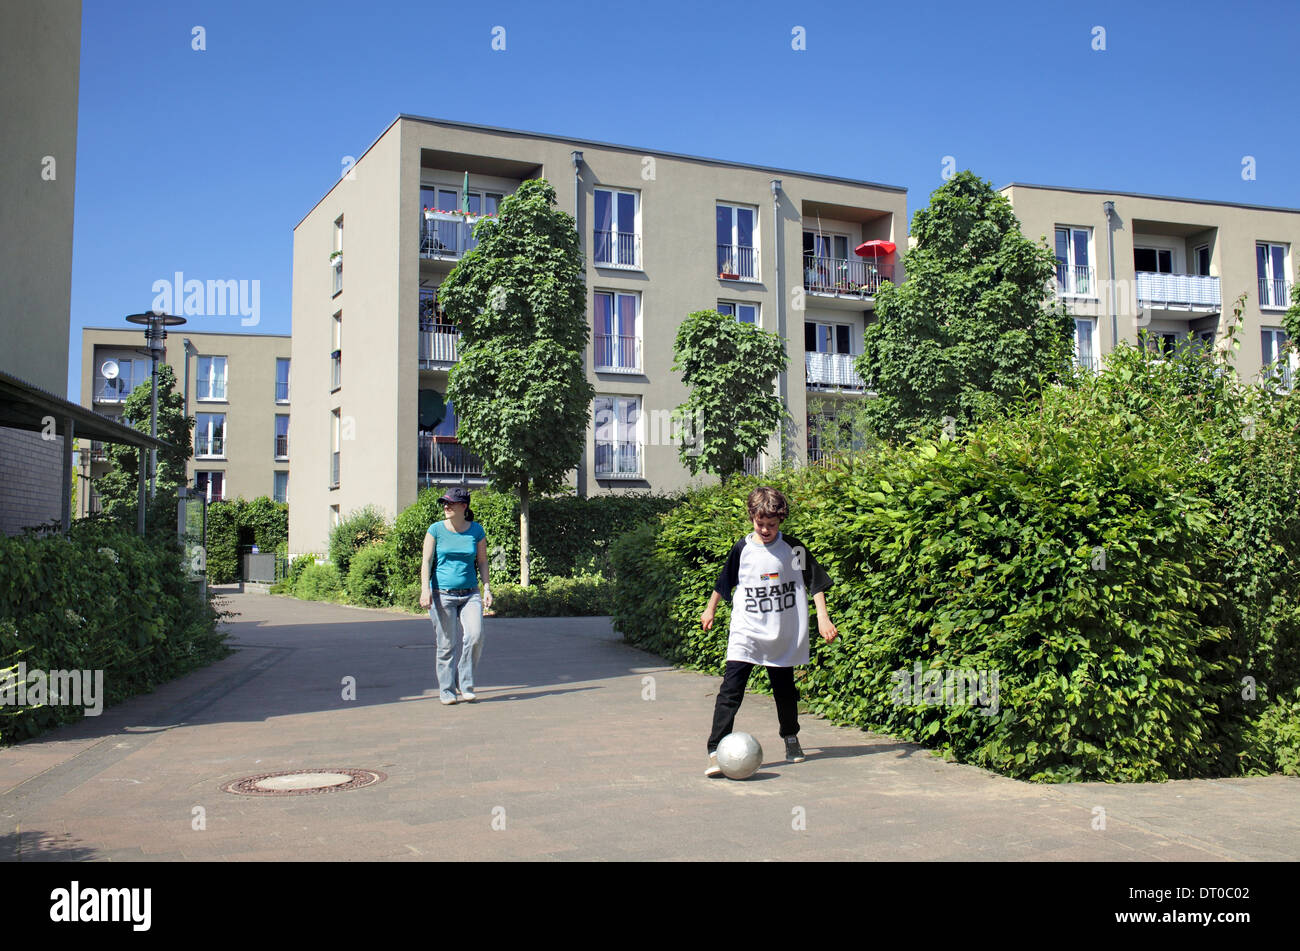 Partie d'Gartensiedlung Weissenburg, un développement du logement sans voiture à Münster, Allemagne. Un endroit sûr pour un ballon de football. Banque D'Images